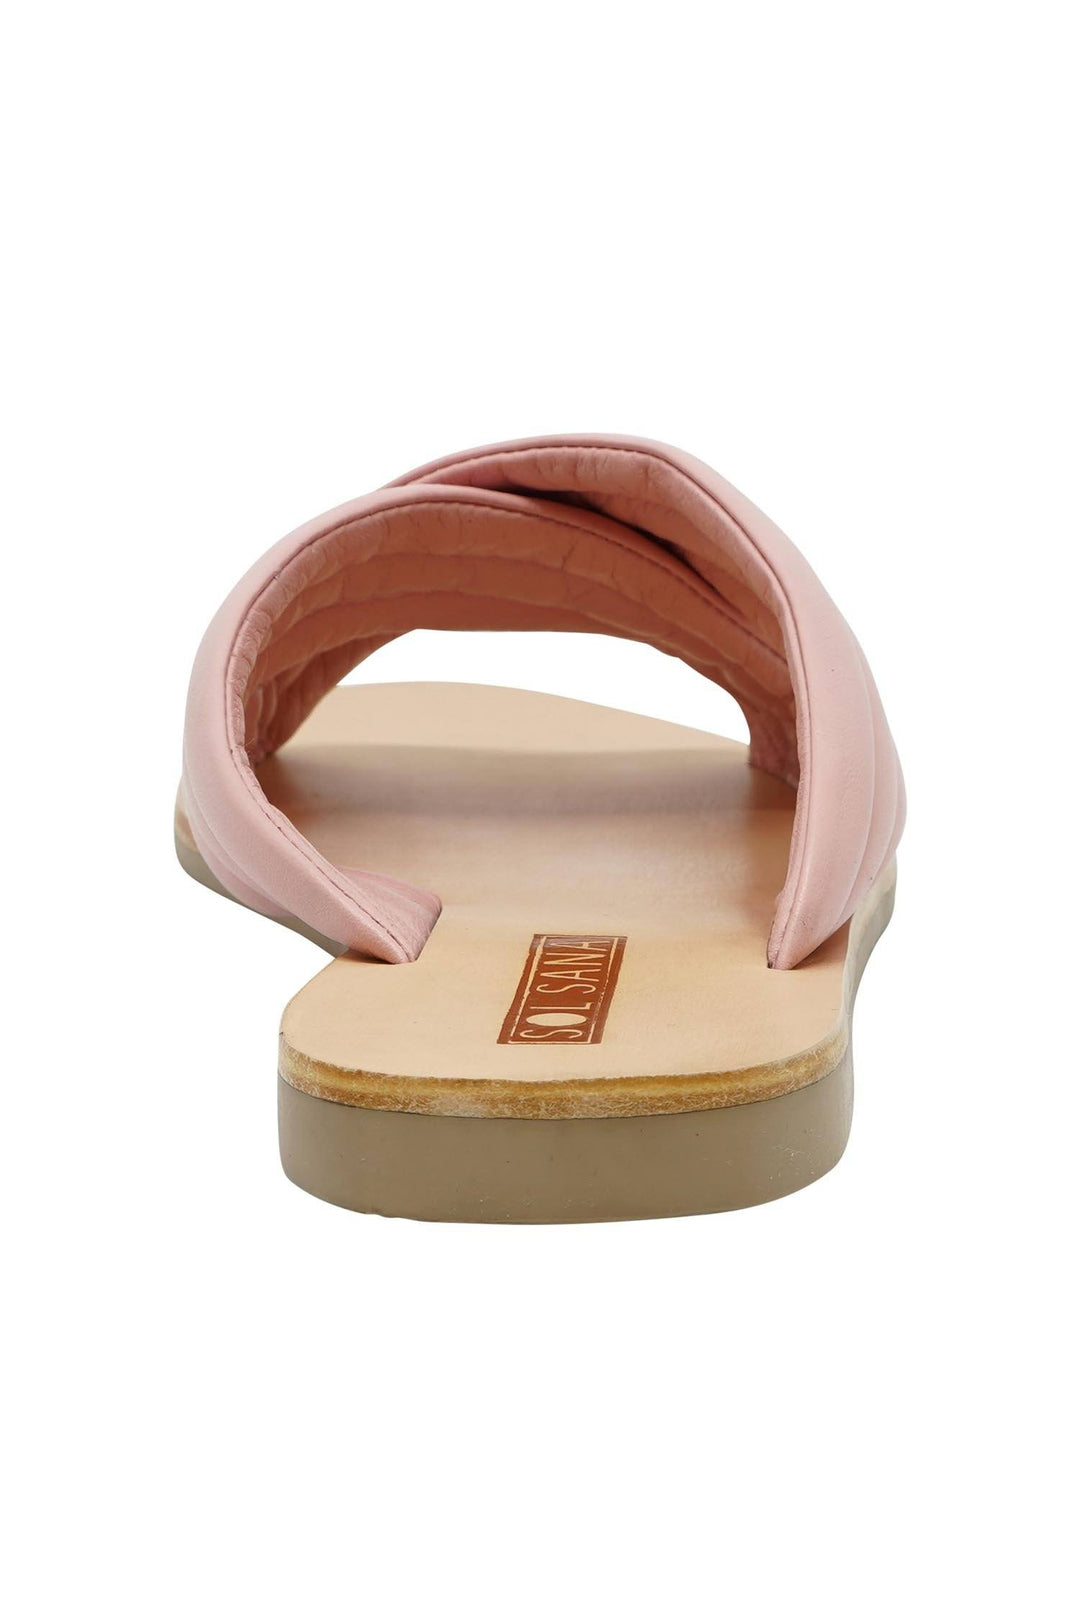 Parlix Slide | FINAL SALE Shoes Sol Sana 